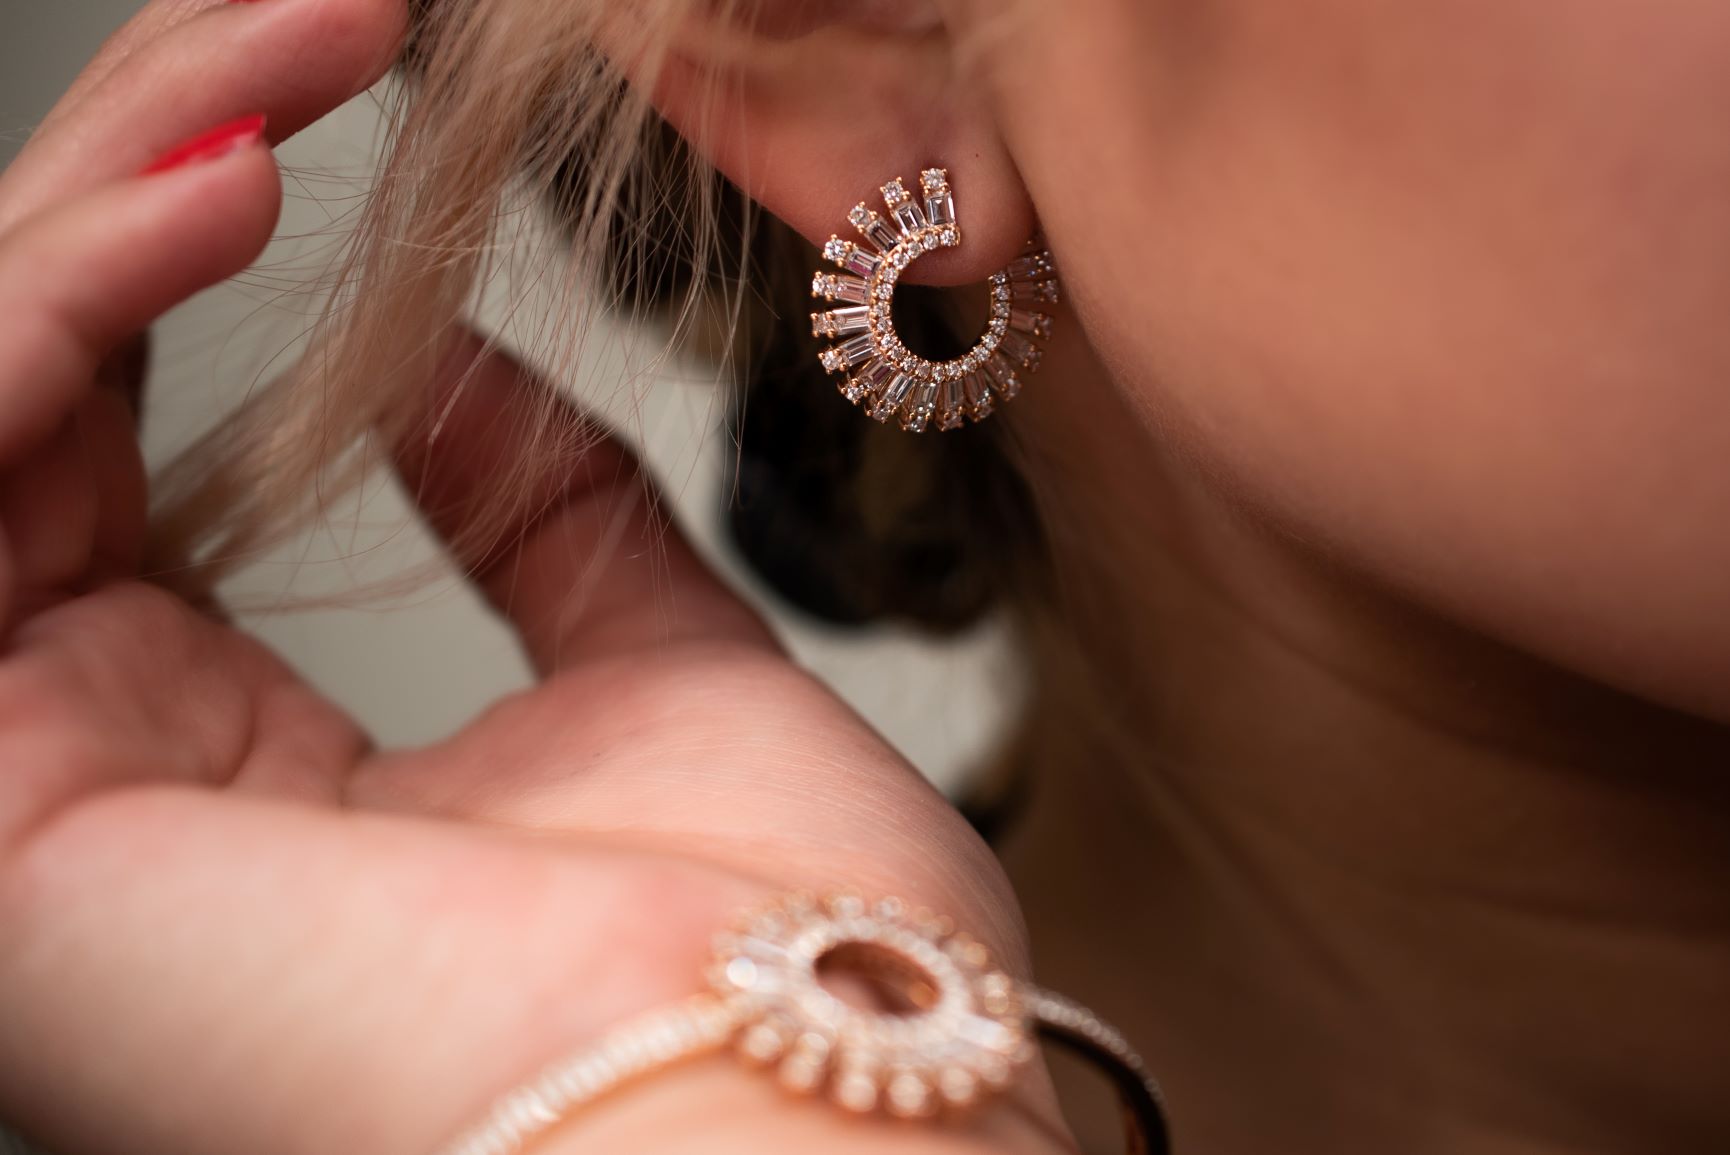 18k Rose Gold Baguette Diamond Spiral Earrings